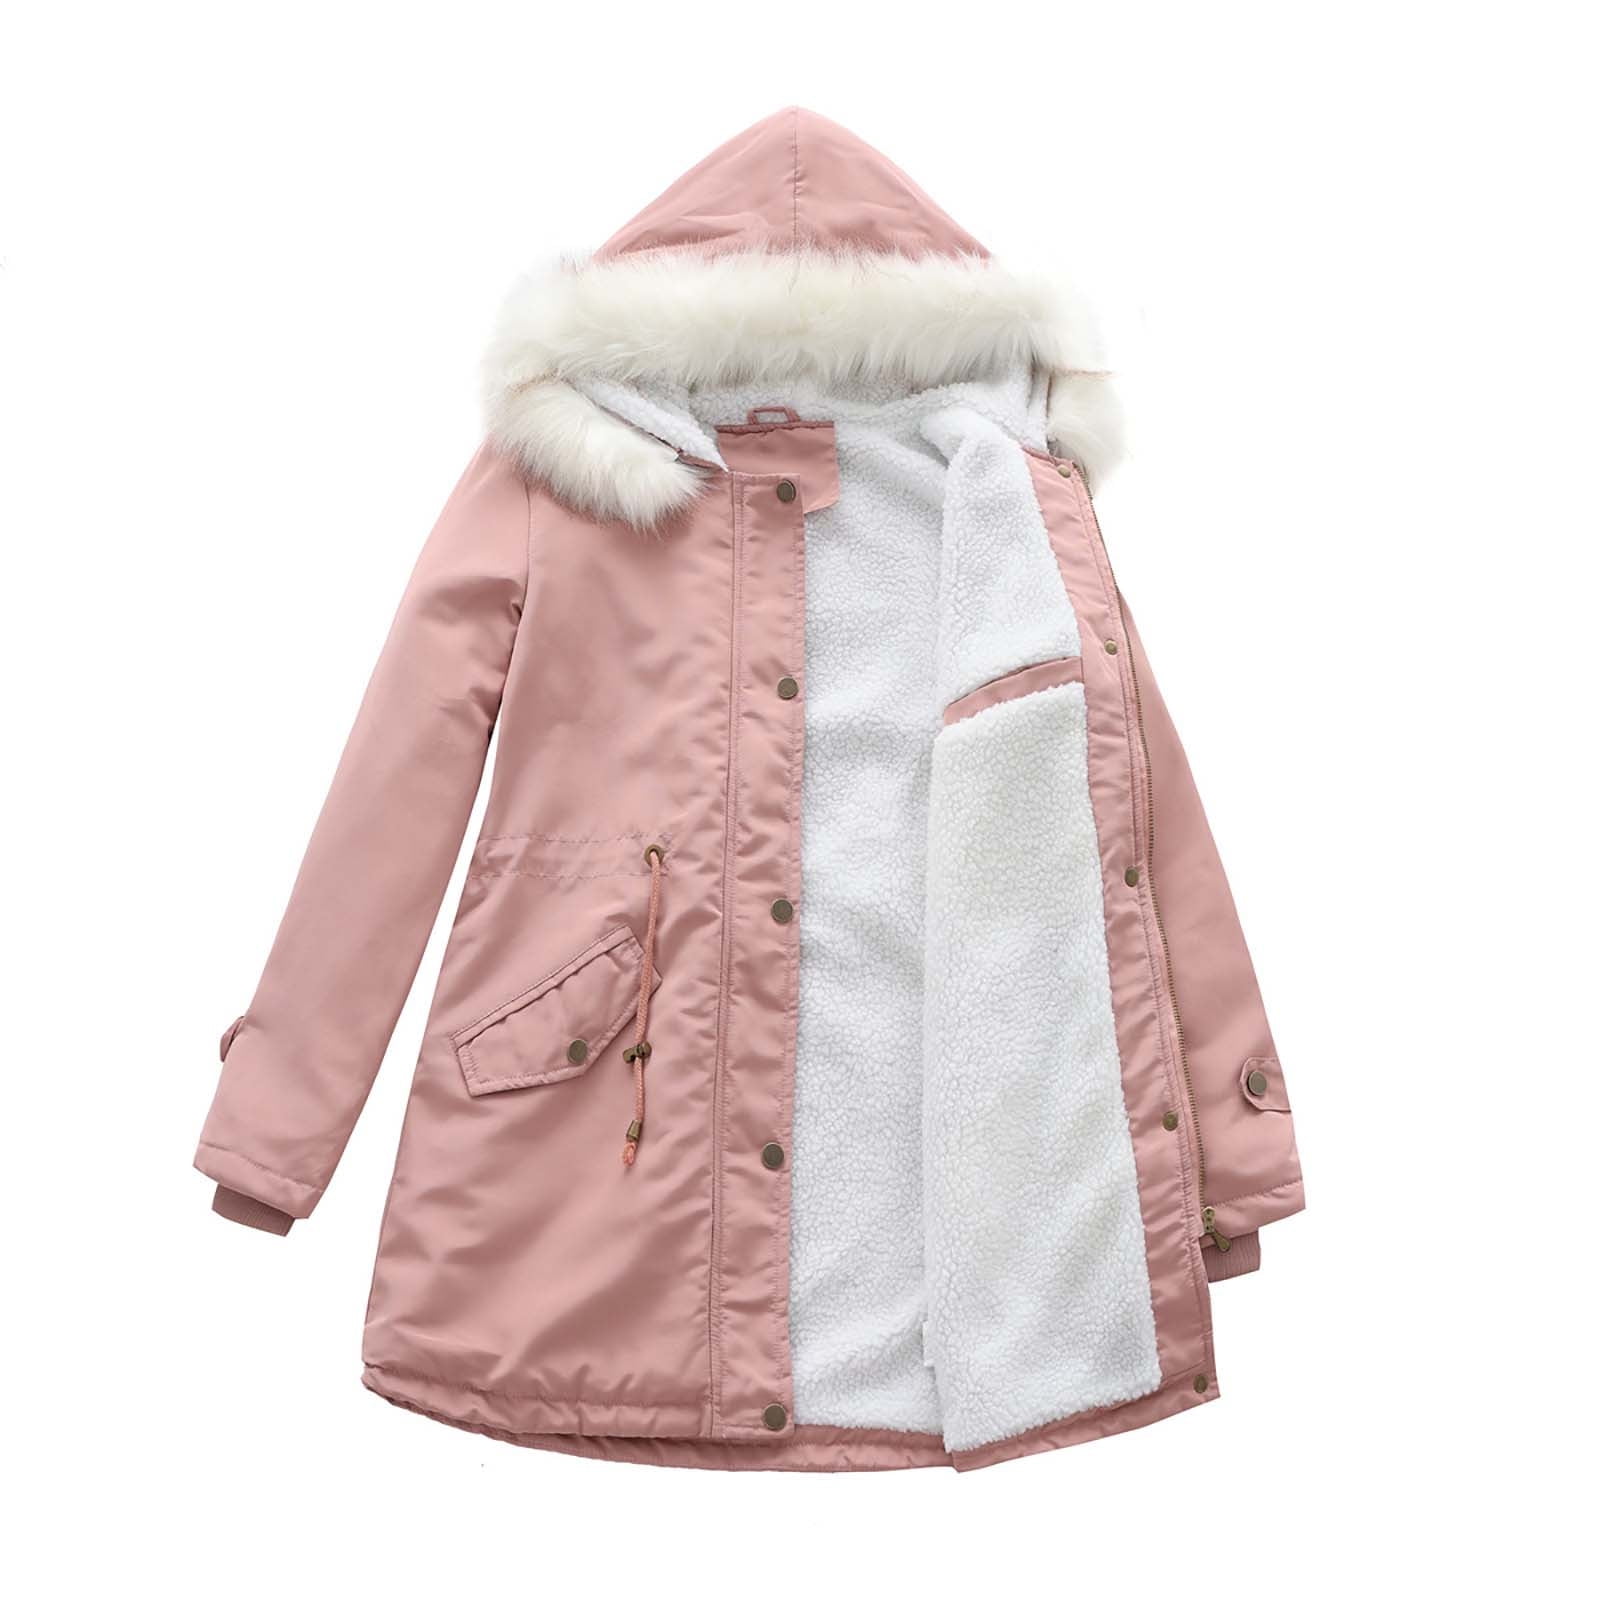 GIRL Pink Faux Fur Hooded Parka Jacket